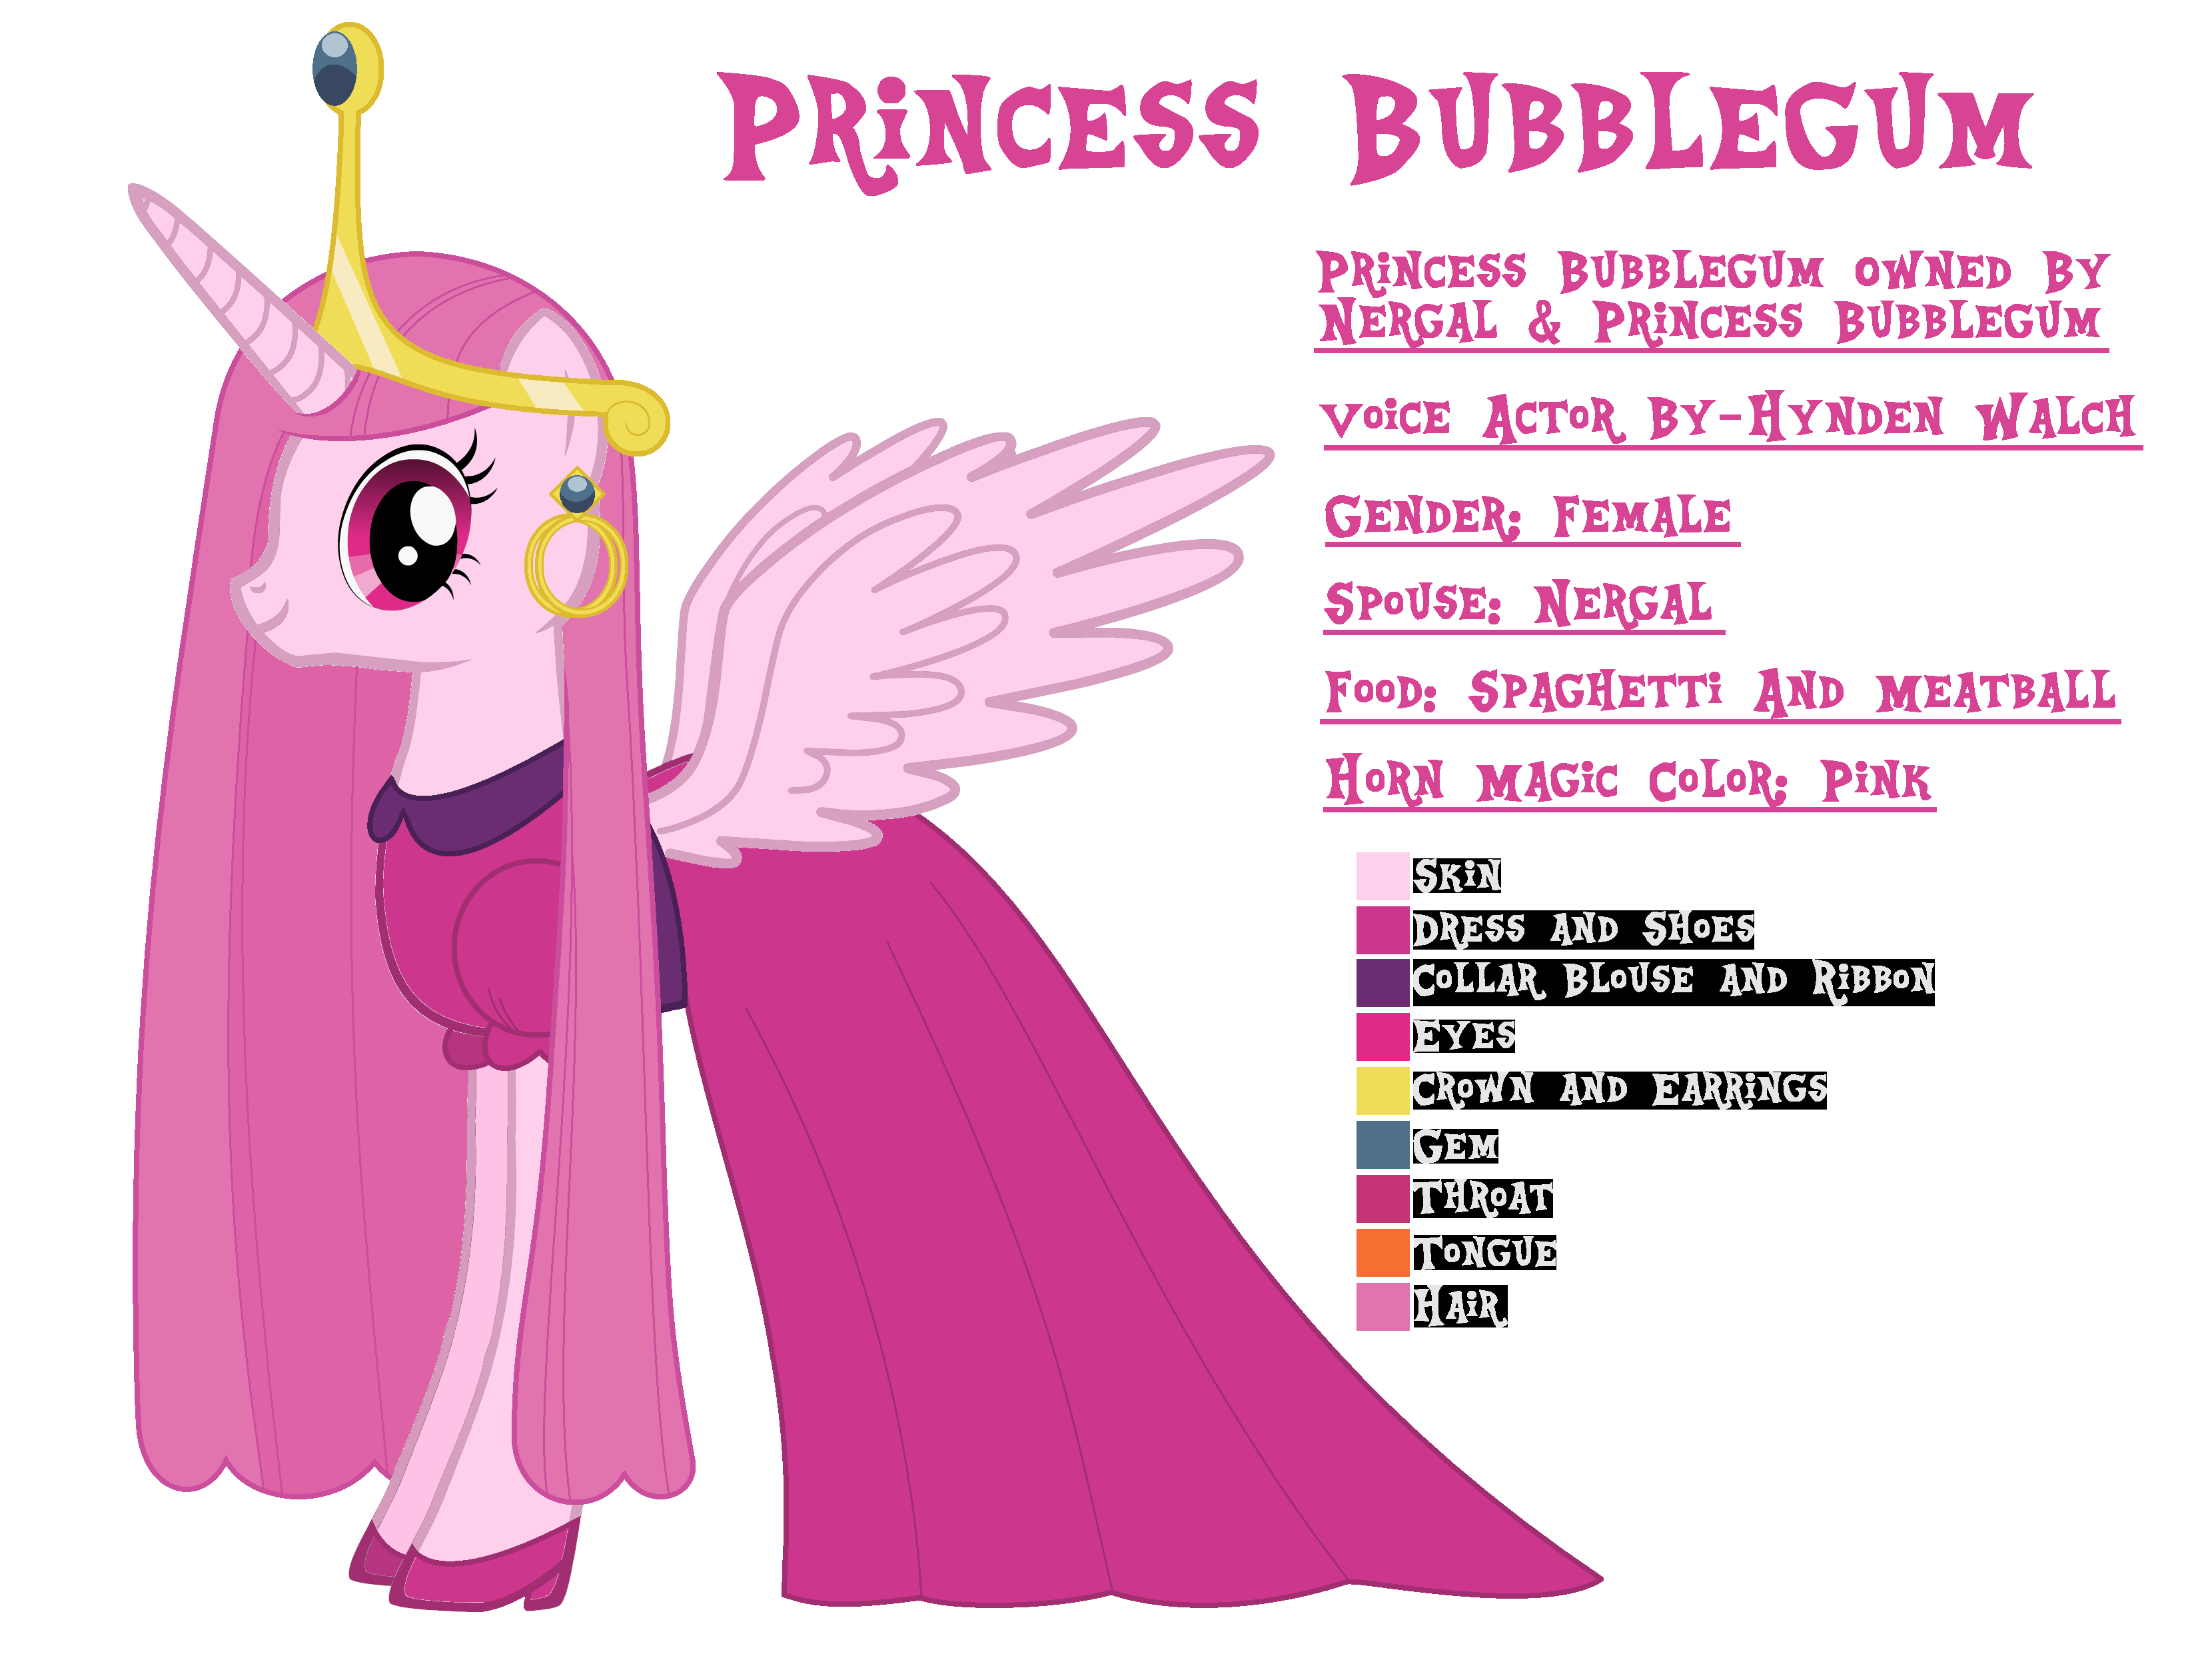 Actor princess bubblegum voice 